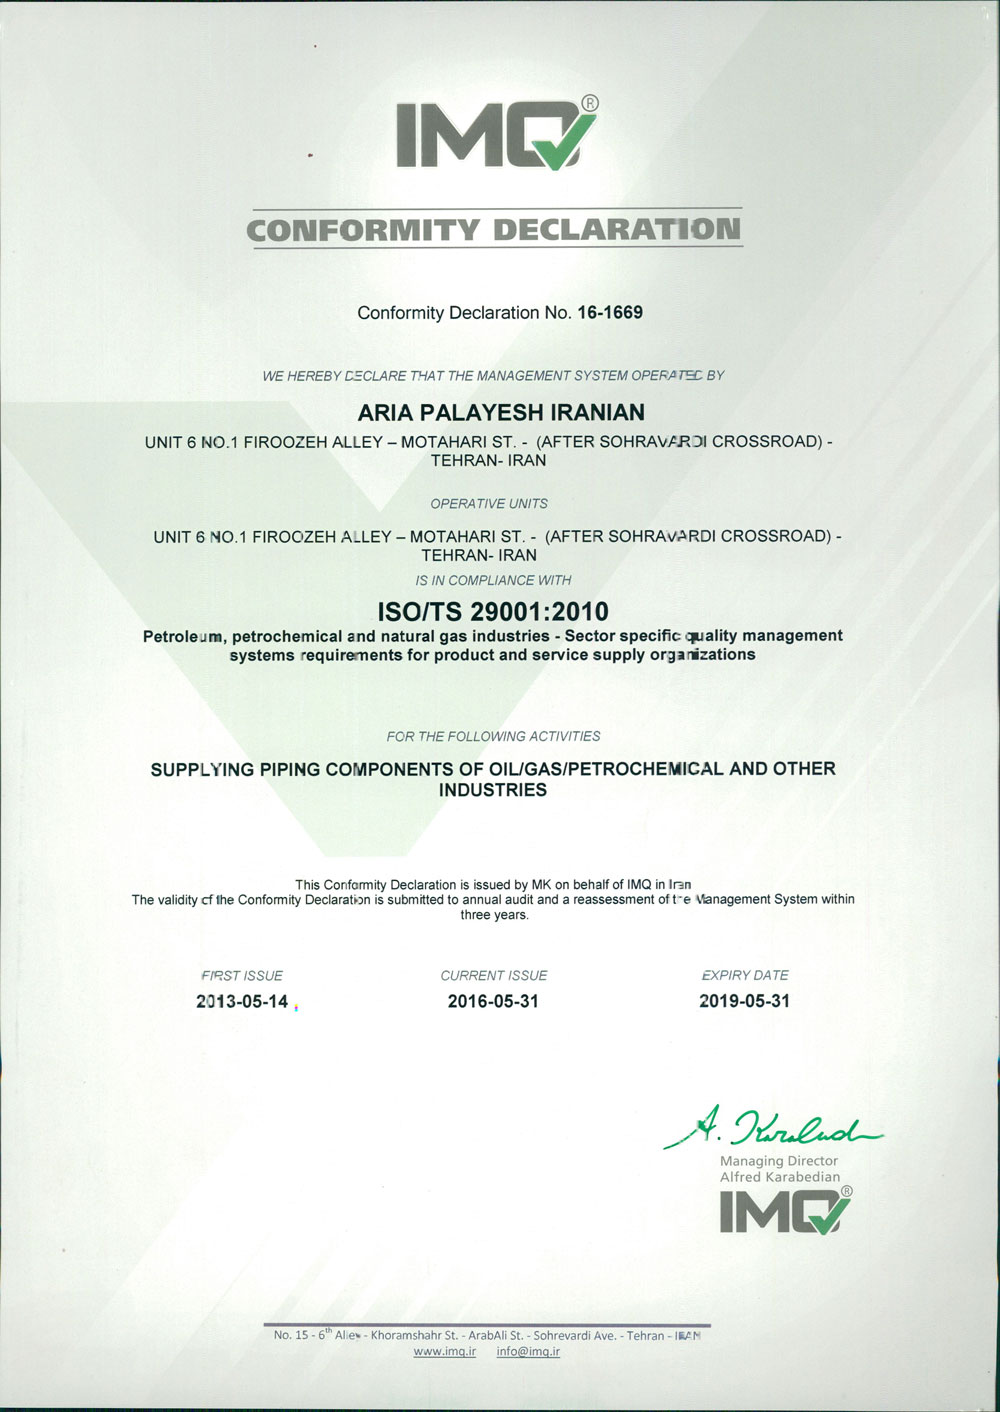 29001-2010 Certificate